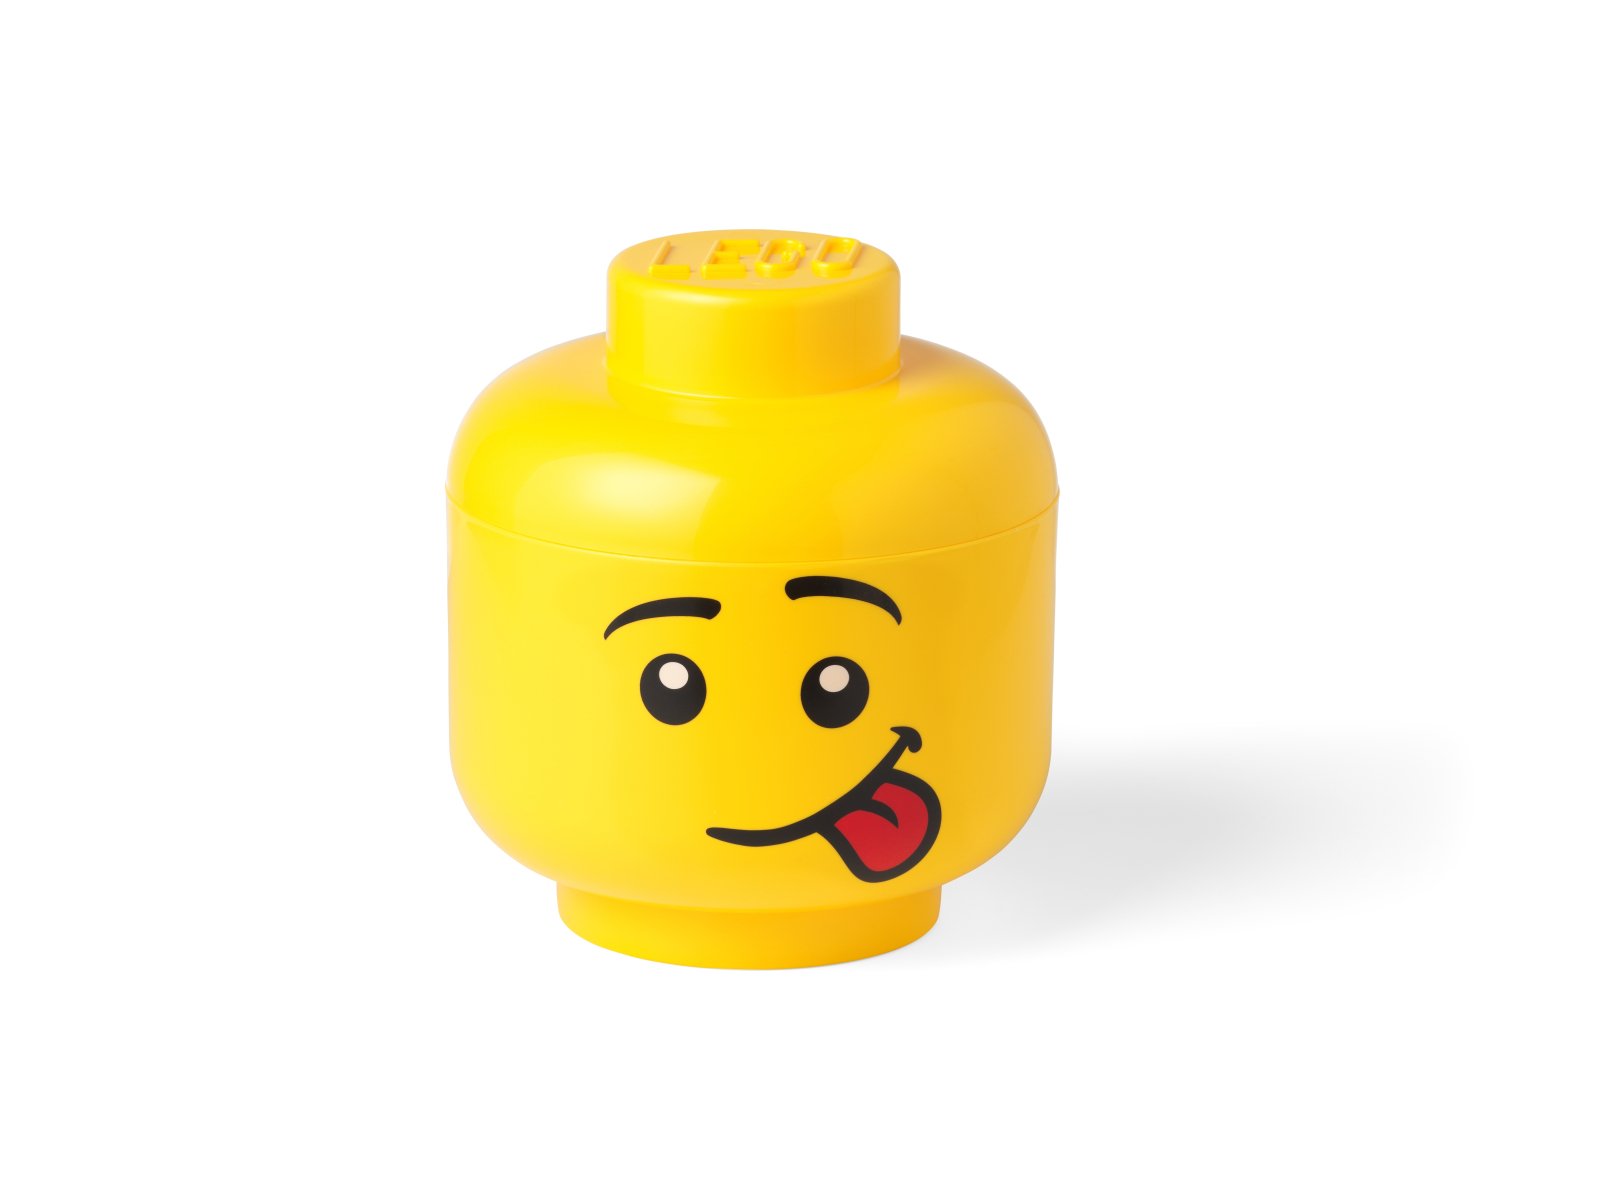 LEGO 5006161 Mały pojemnik w kształcie głowy śmiesznej minifigurki LEGO®